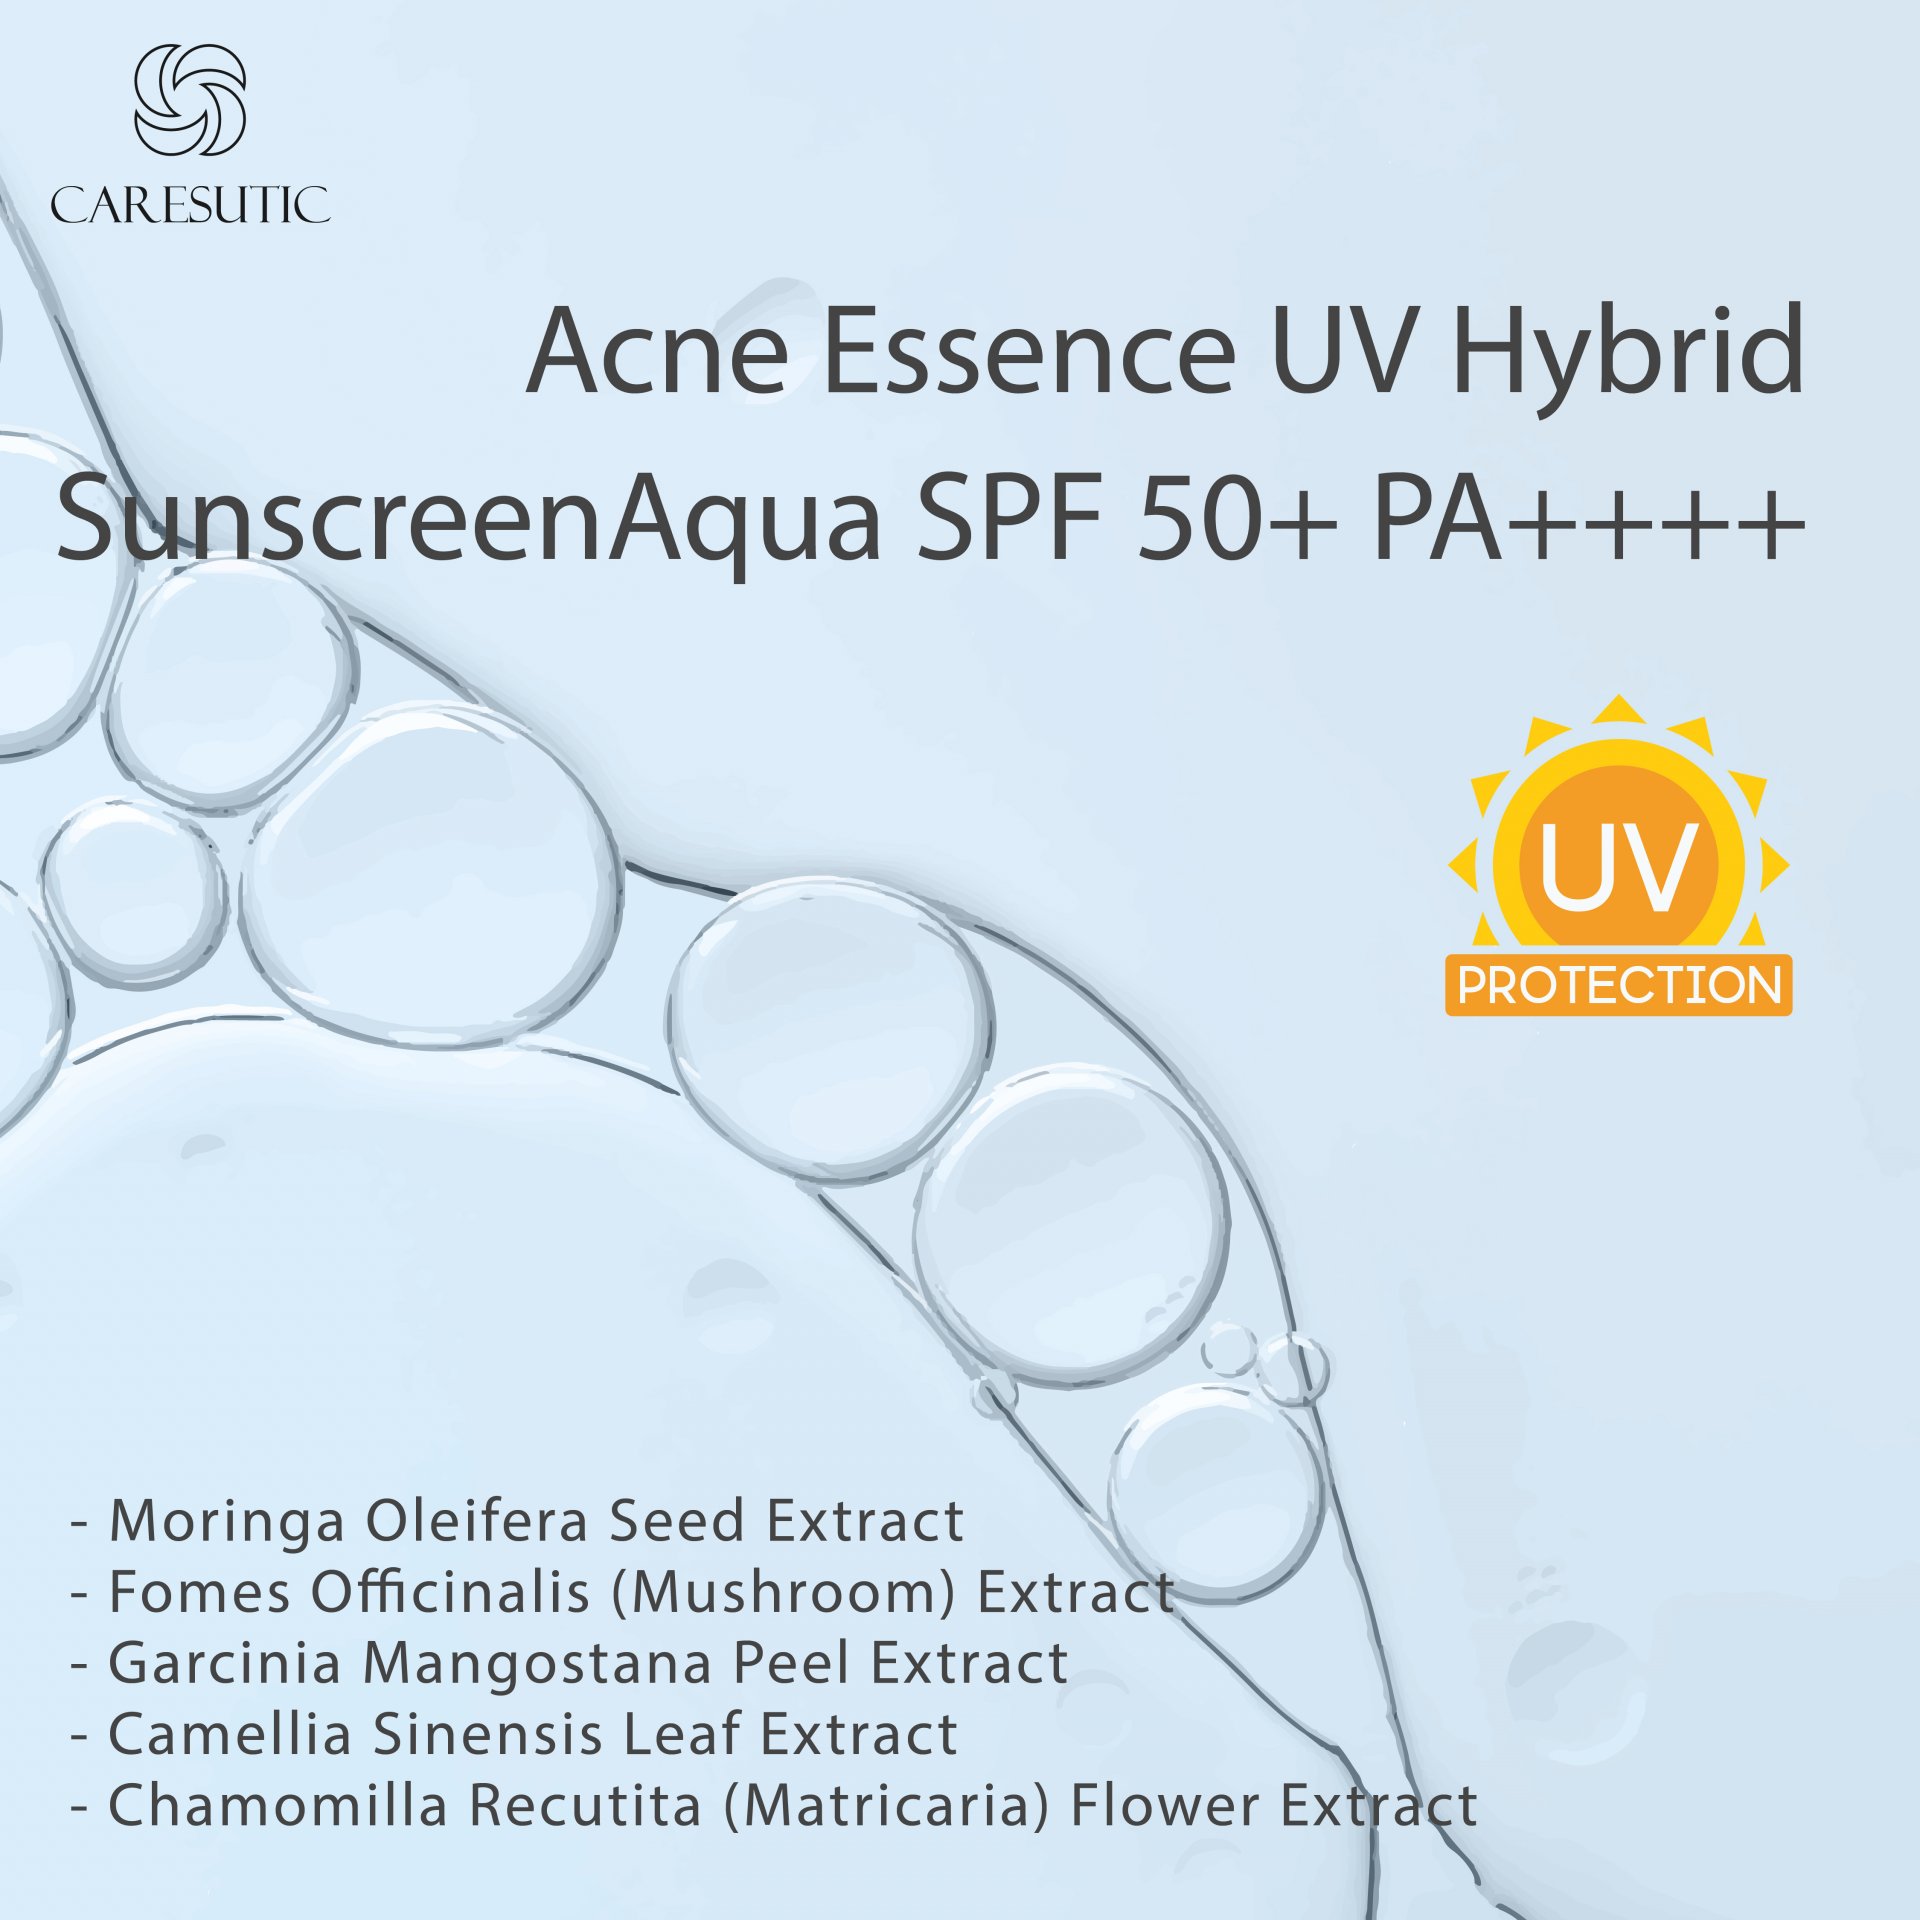 Acne Essence UV Hybrid Sunscreen Aqua SPF 50+ PA++++